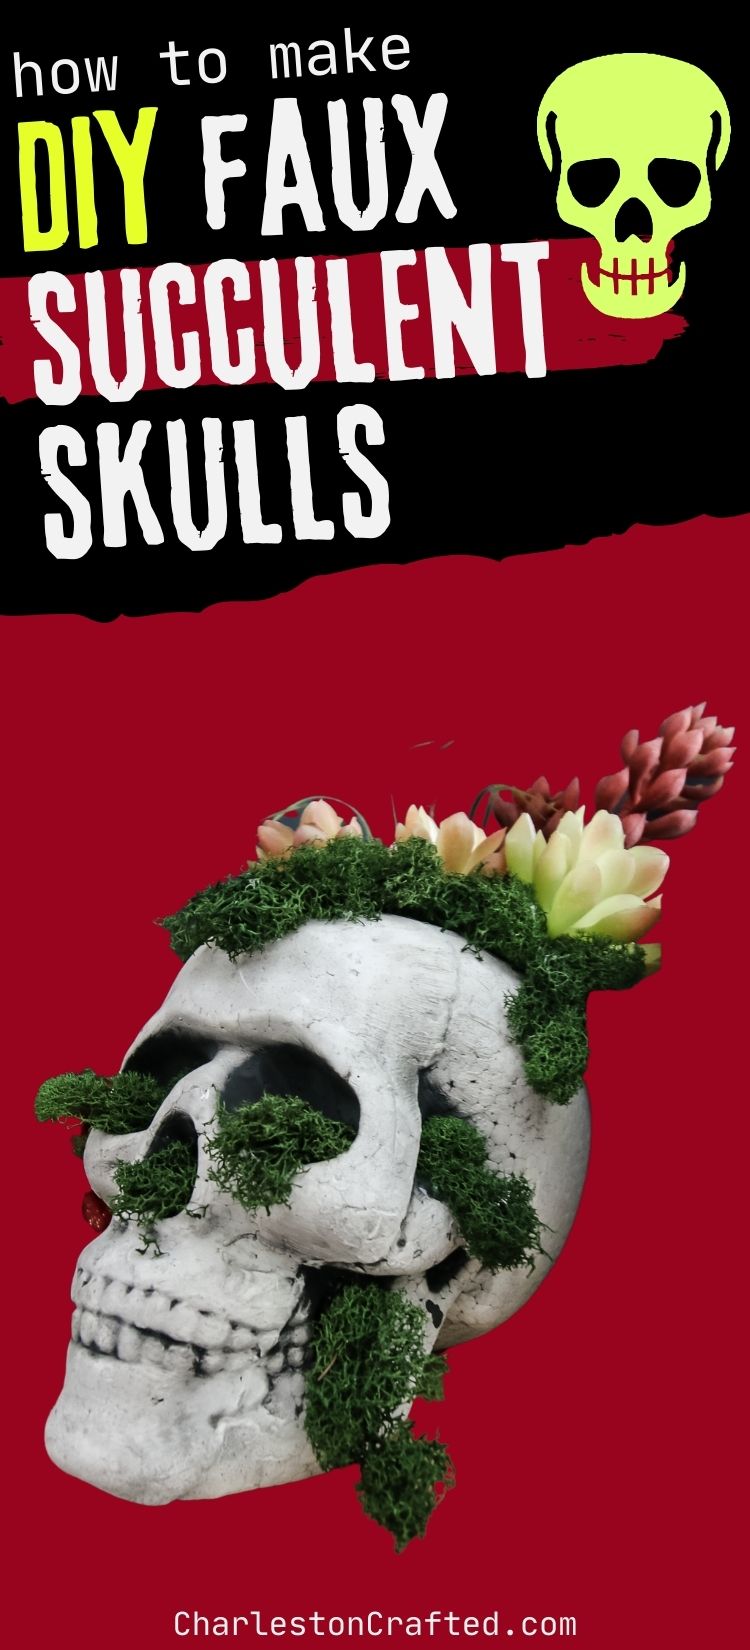 DIY faux succulent skulls